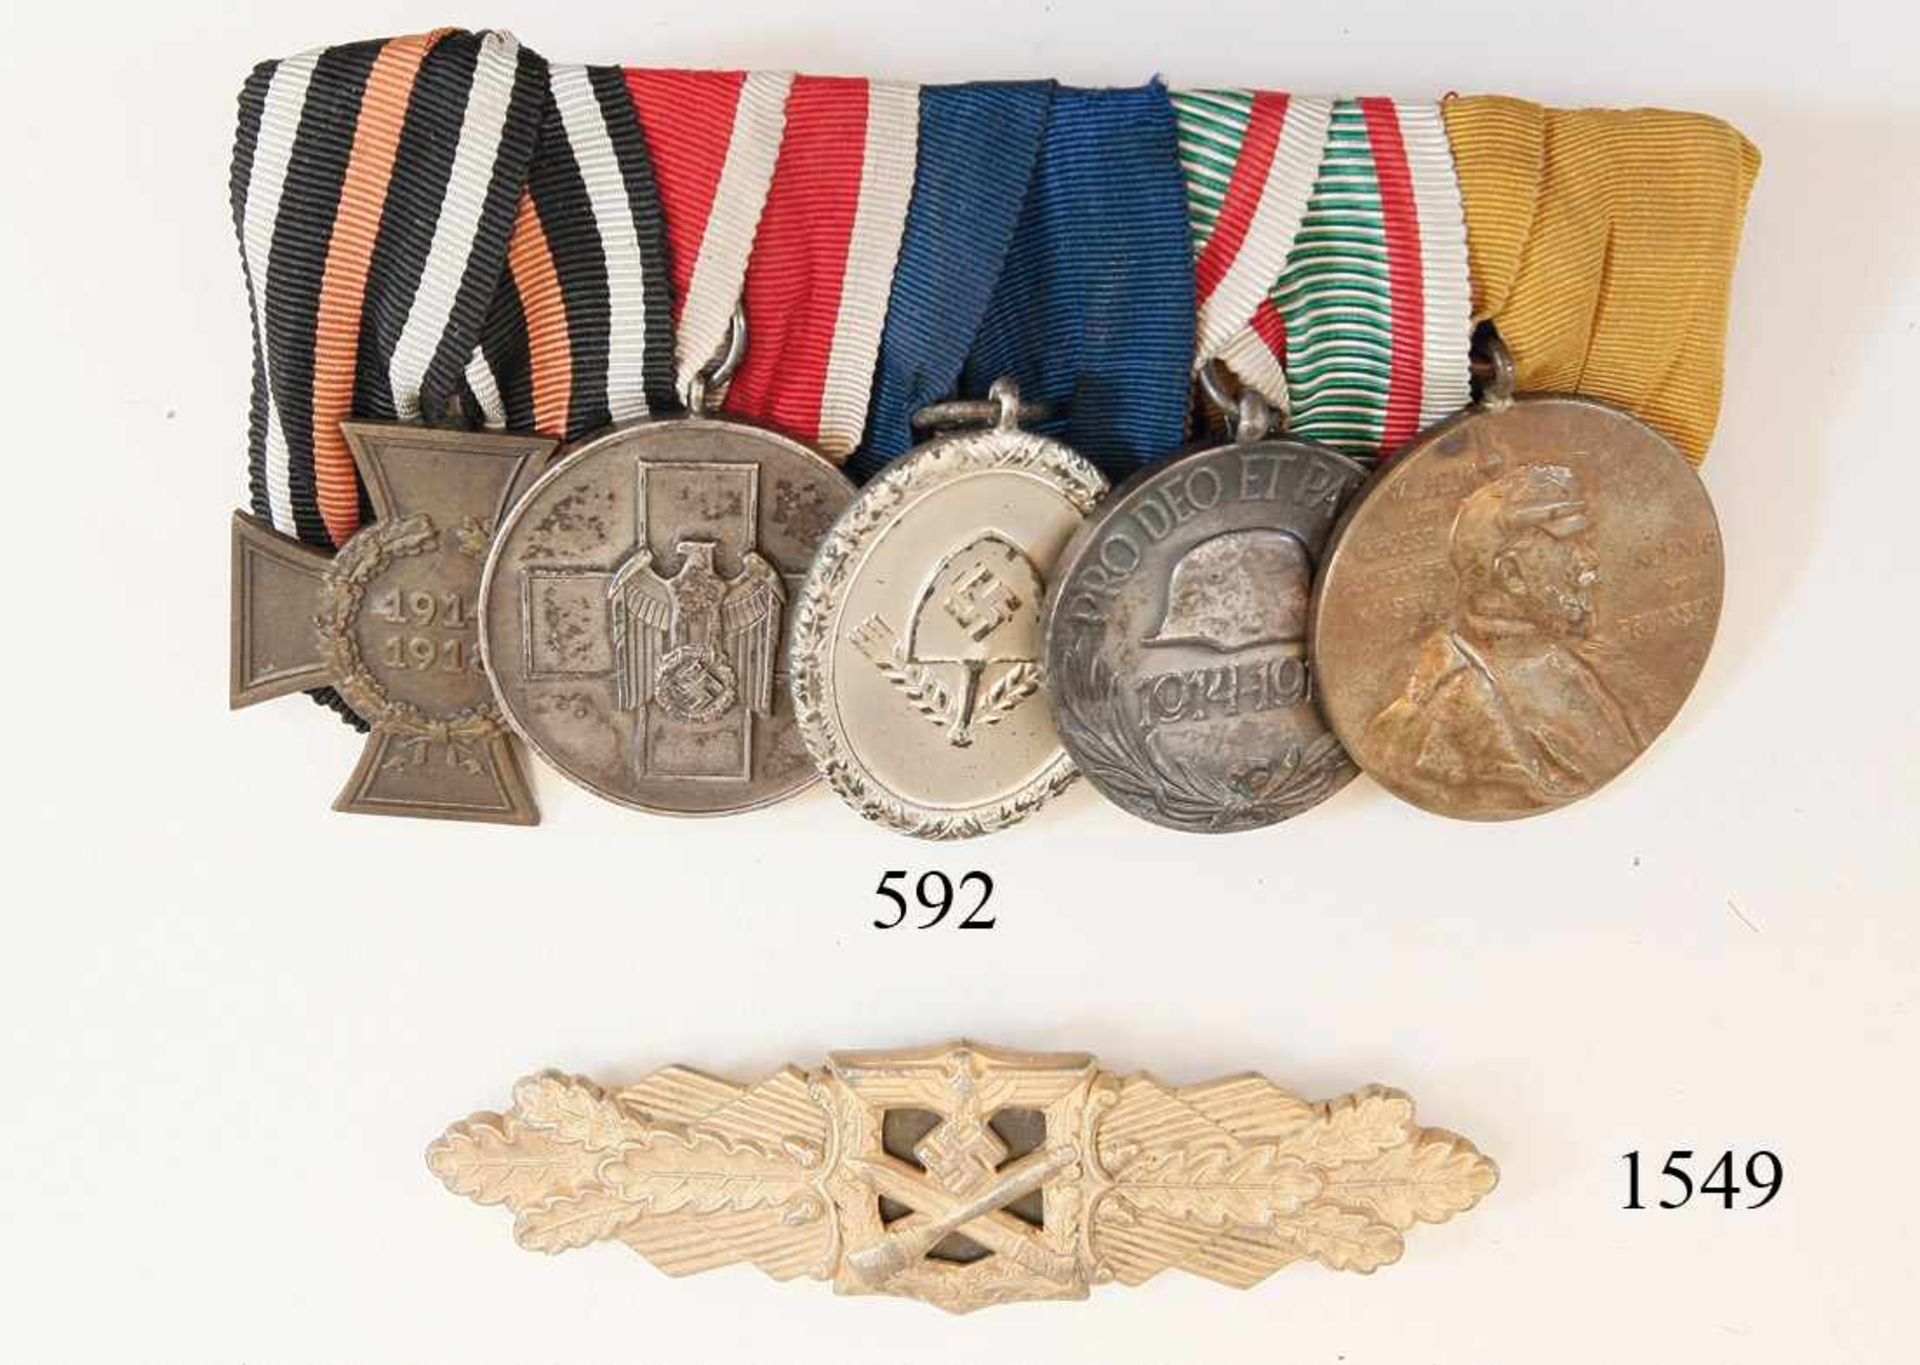 Ordenspange mit 5 DekorationenTeilnehmerkreuz. Volkspflegemedaille. RAD Dienstauszeichung für 12